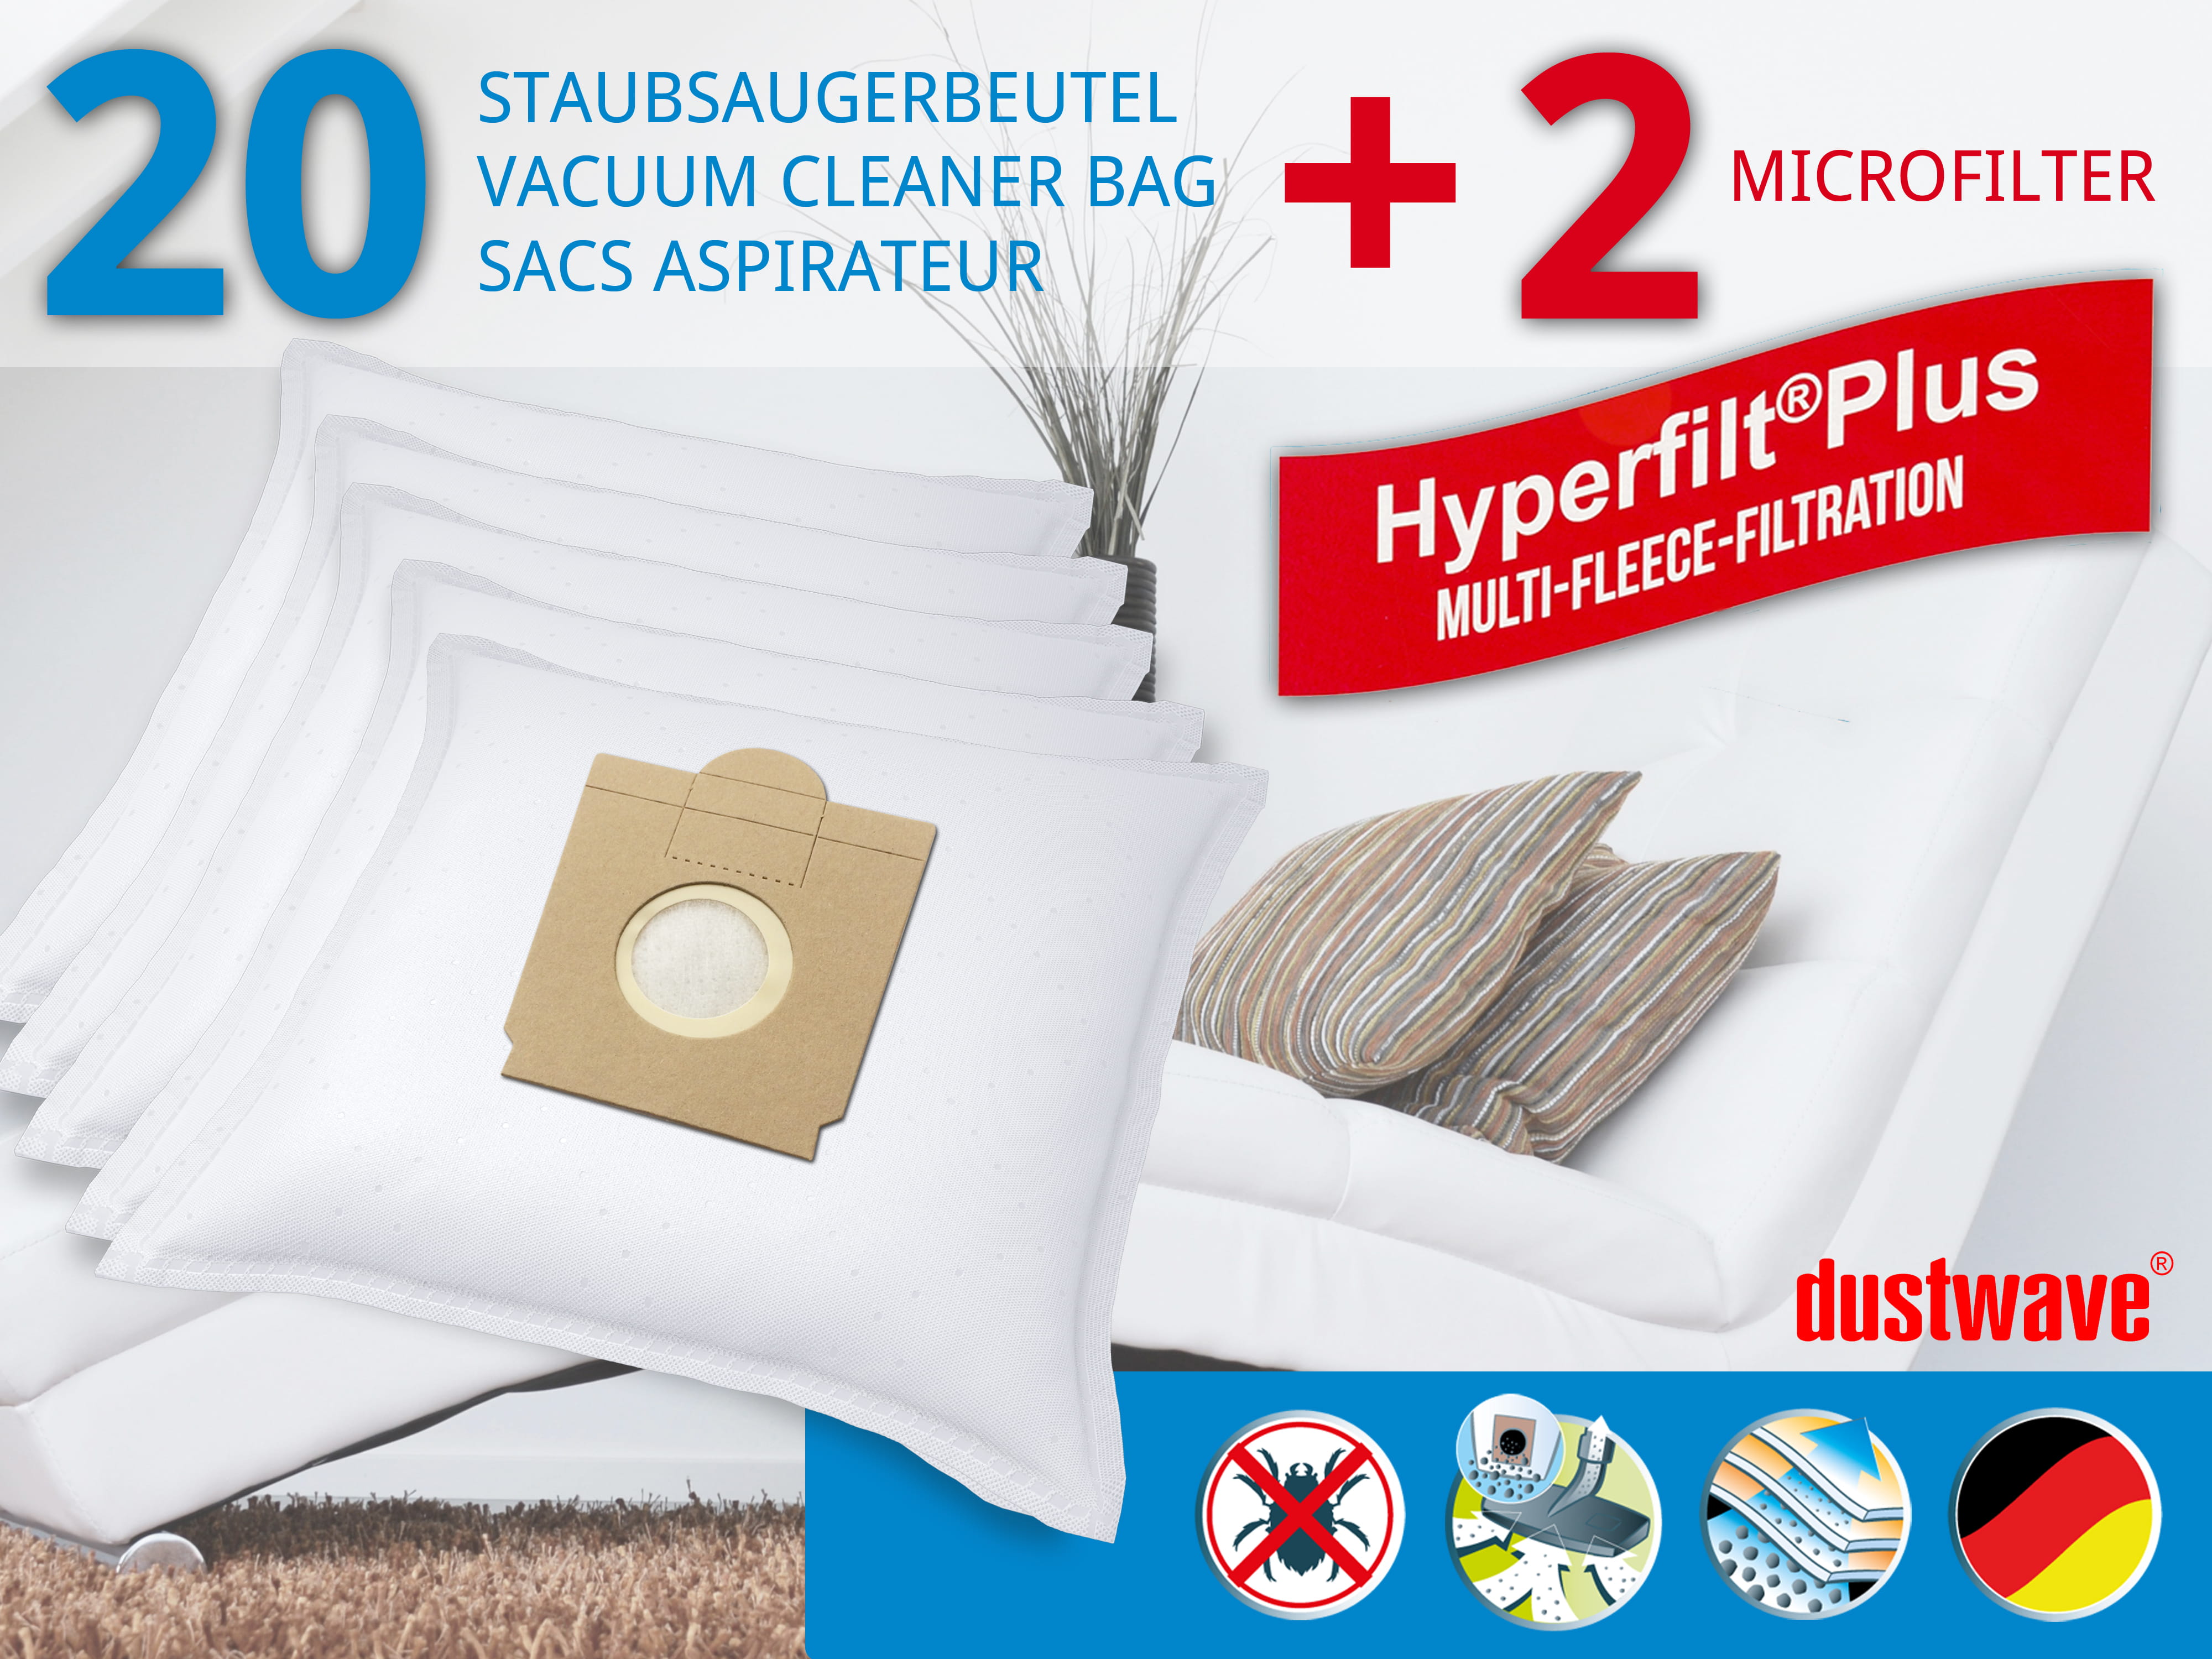 Dustwave® 20 Staubsaugerbeutel für SWIRL S 66 - hocheffizient, mehrlagiges Mikrovlies mit Hygieneverschluss - Made in Germany